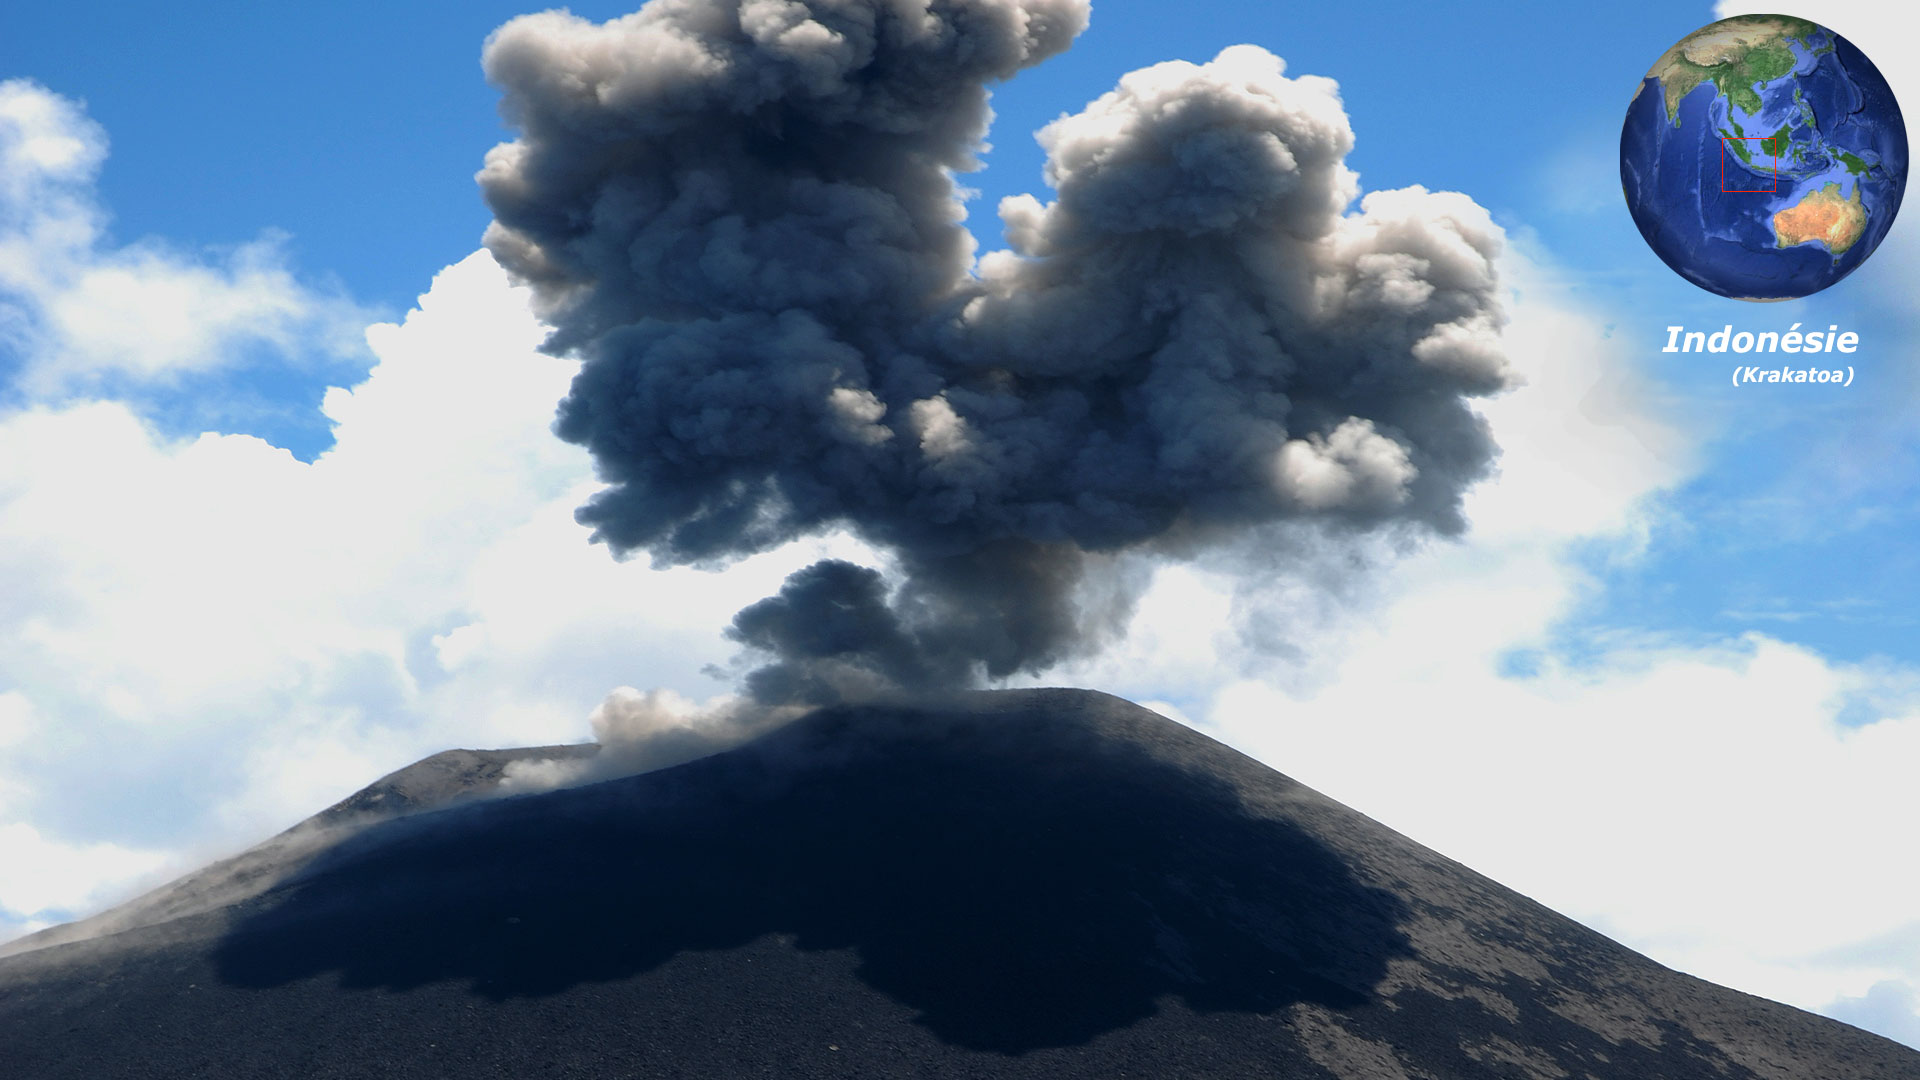 Le Krakatoa, en Indonésie, et son éruption de 1883